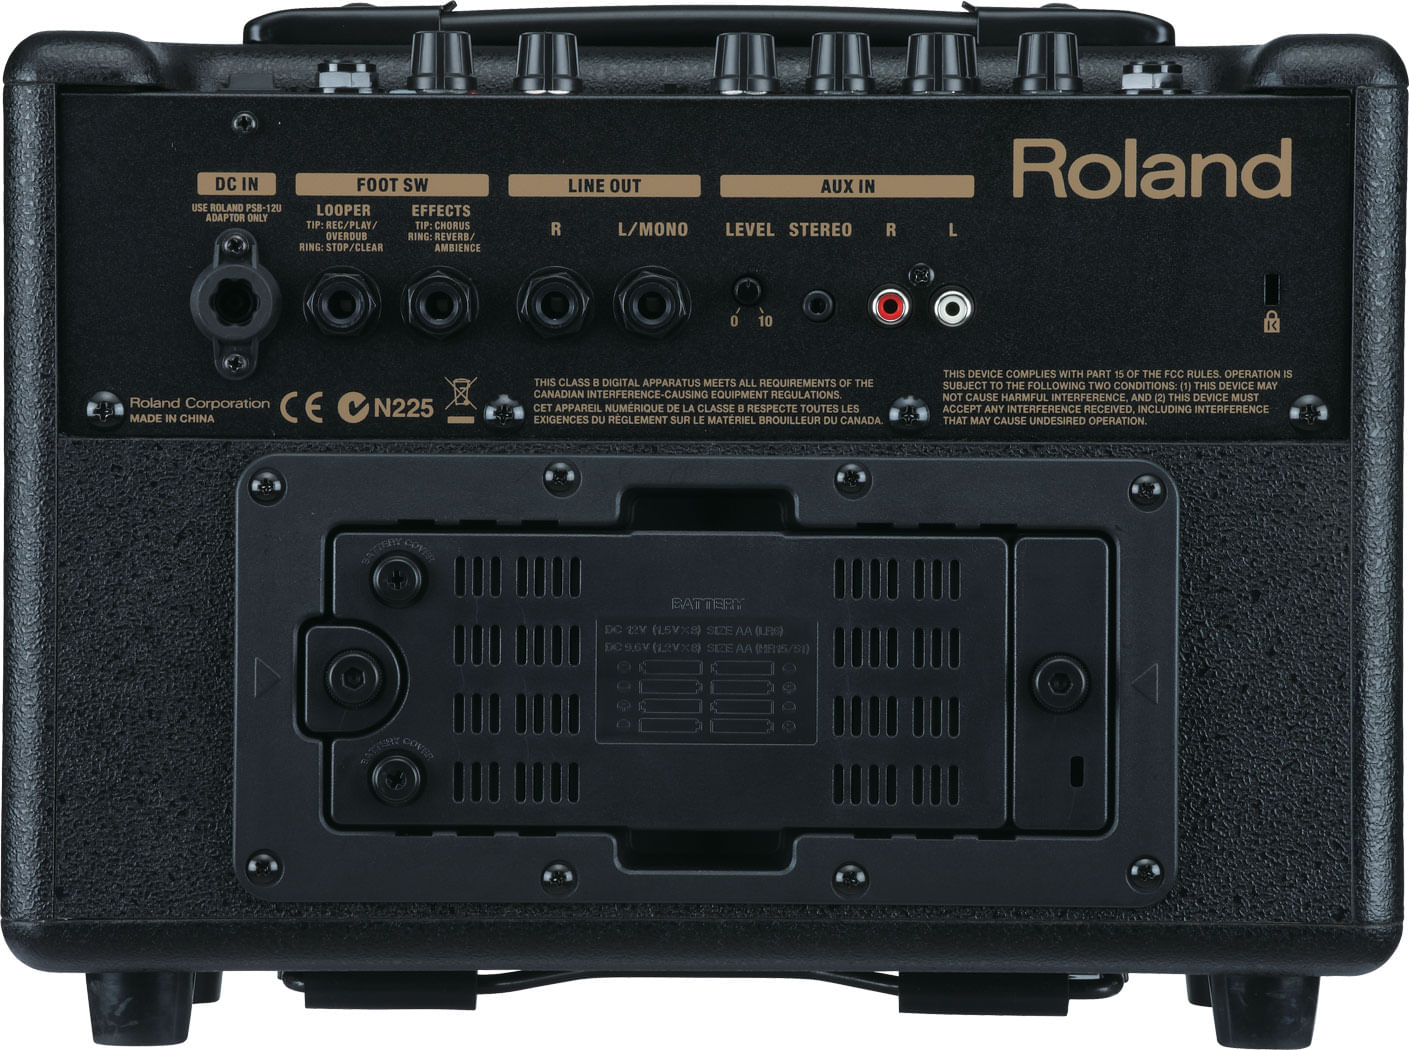 Roland AC-33 Acoustic Chorus Guitar Amp - Cosmo Music